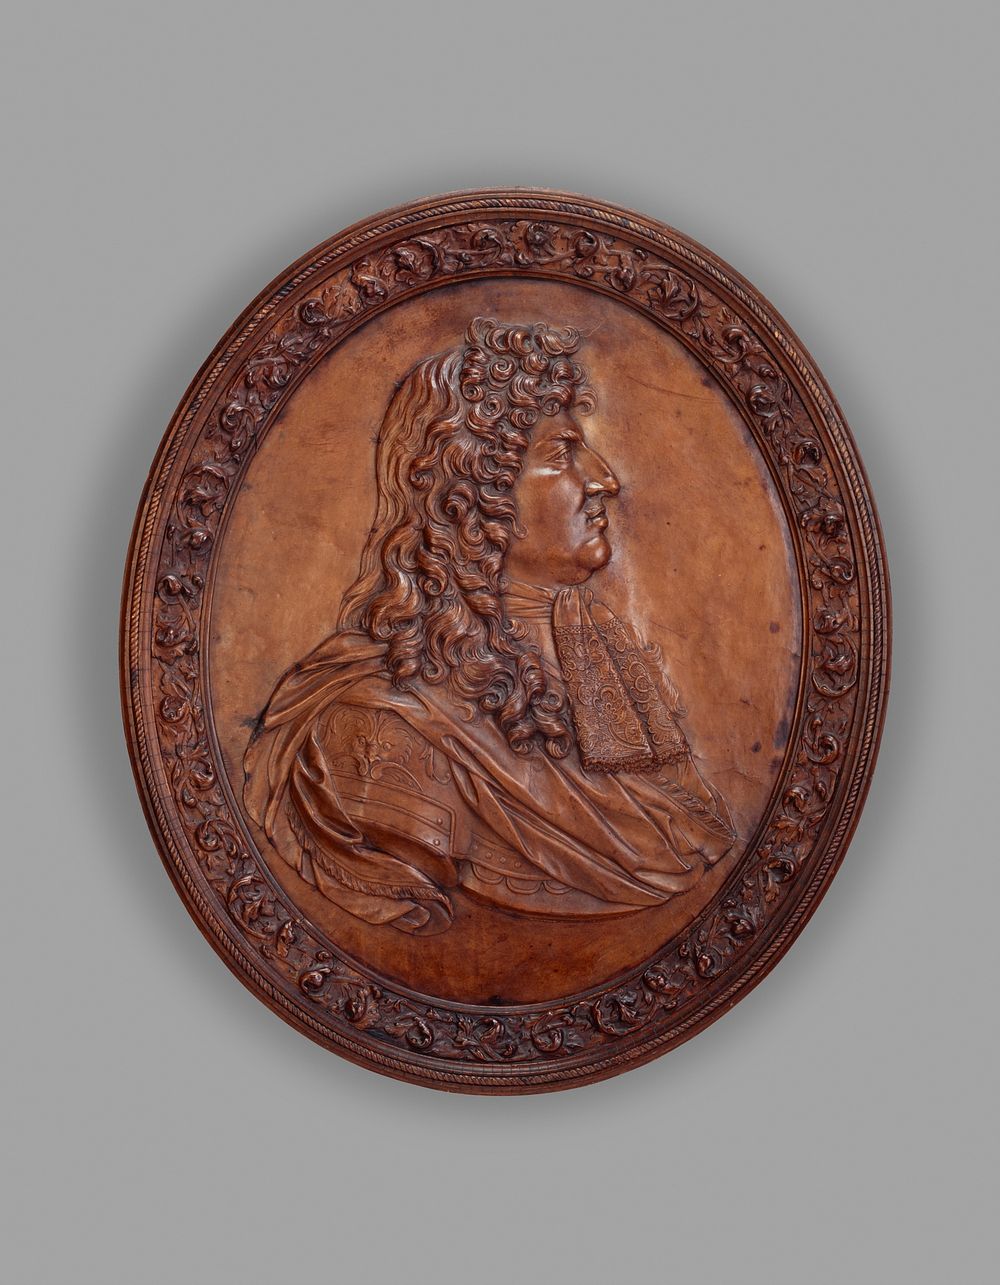 Relief portrait of Louis XIV